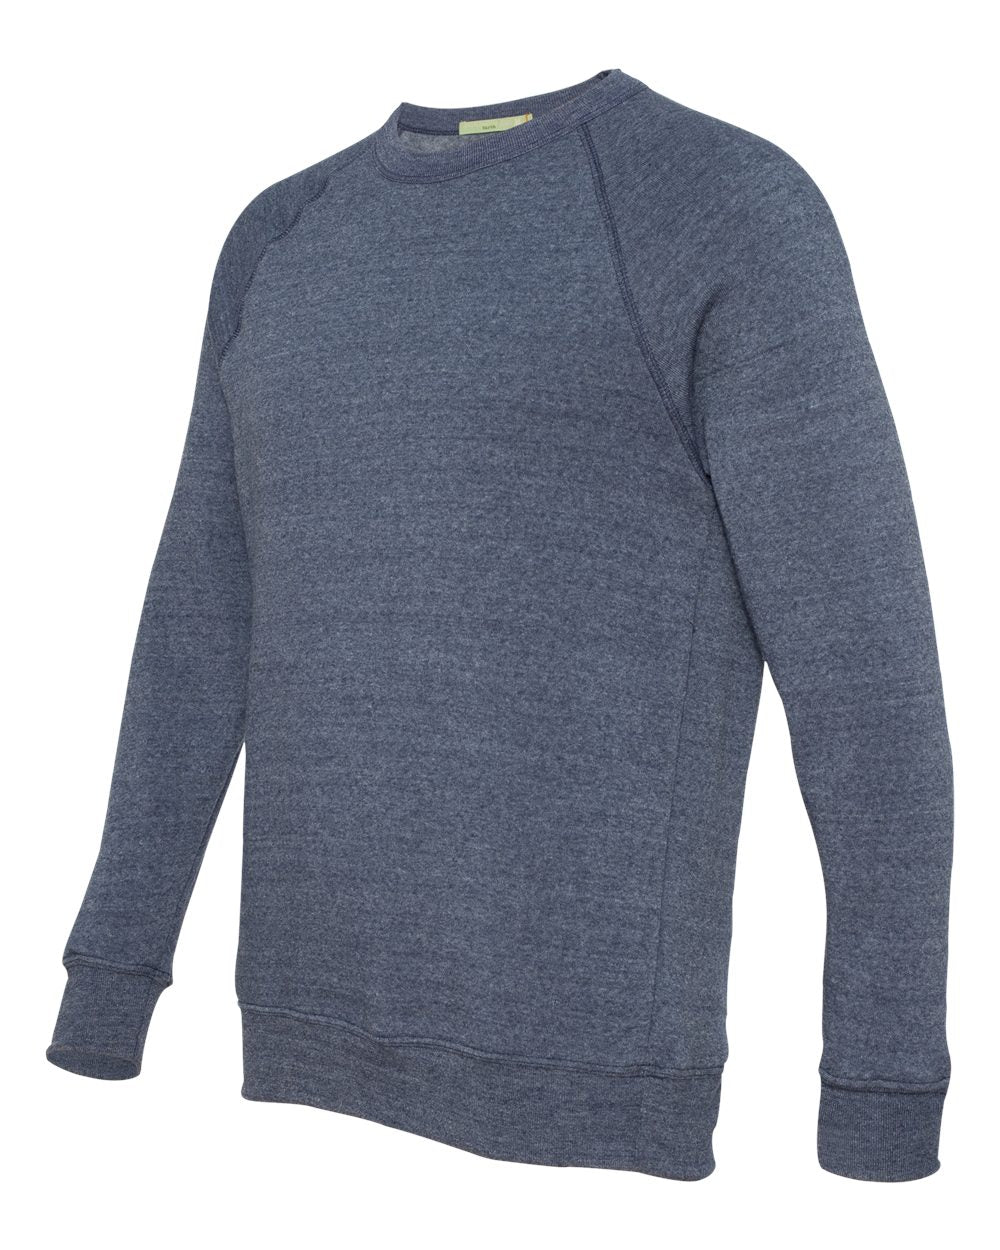 Alternative Champ Eco-Fleece Crewneck Sweatshirt 9575 #color_Eco True Navy